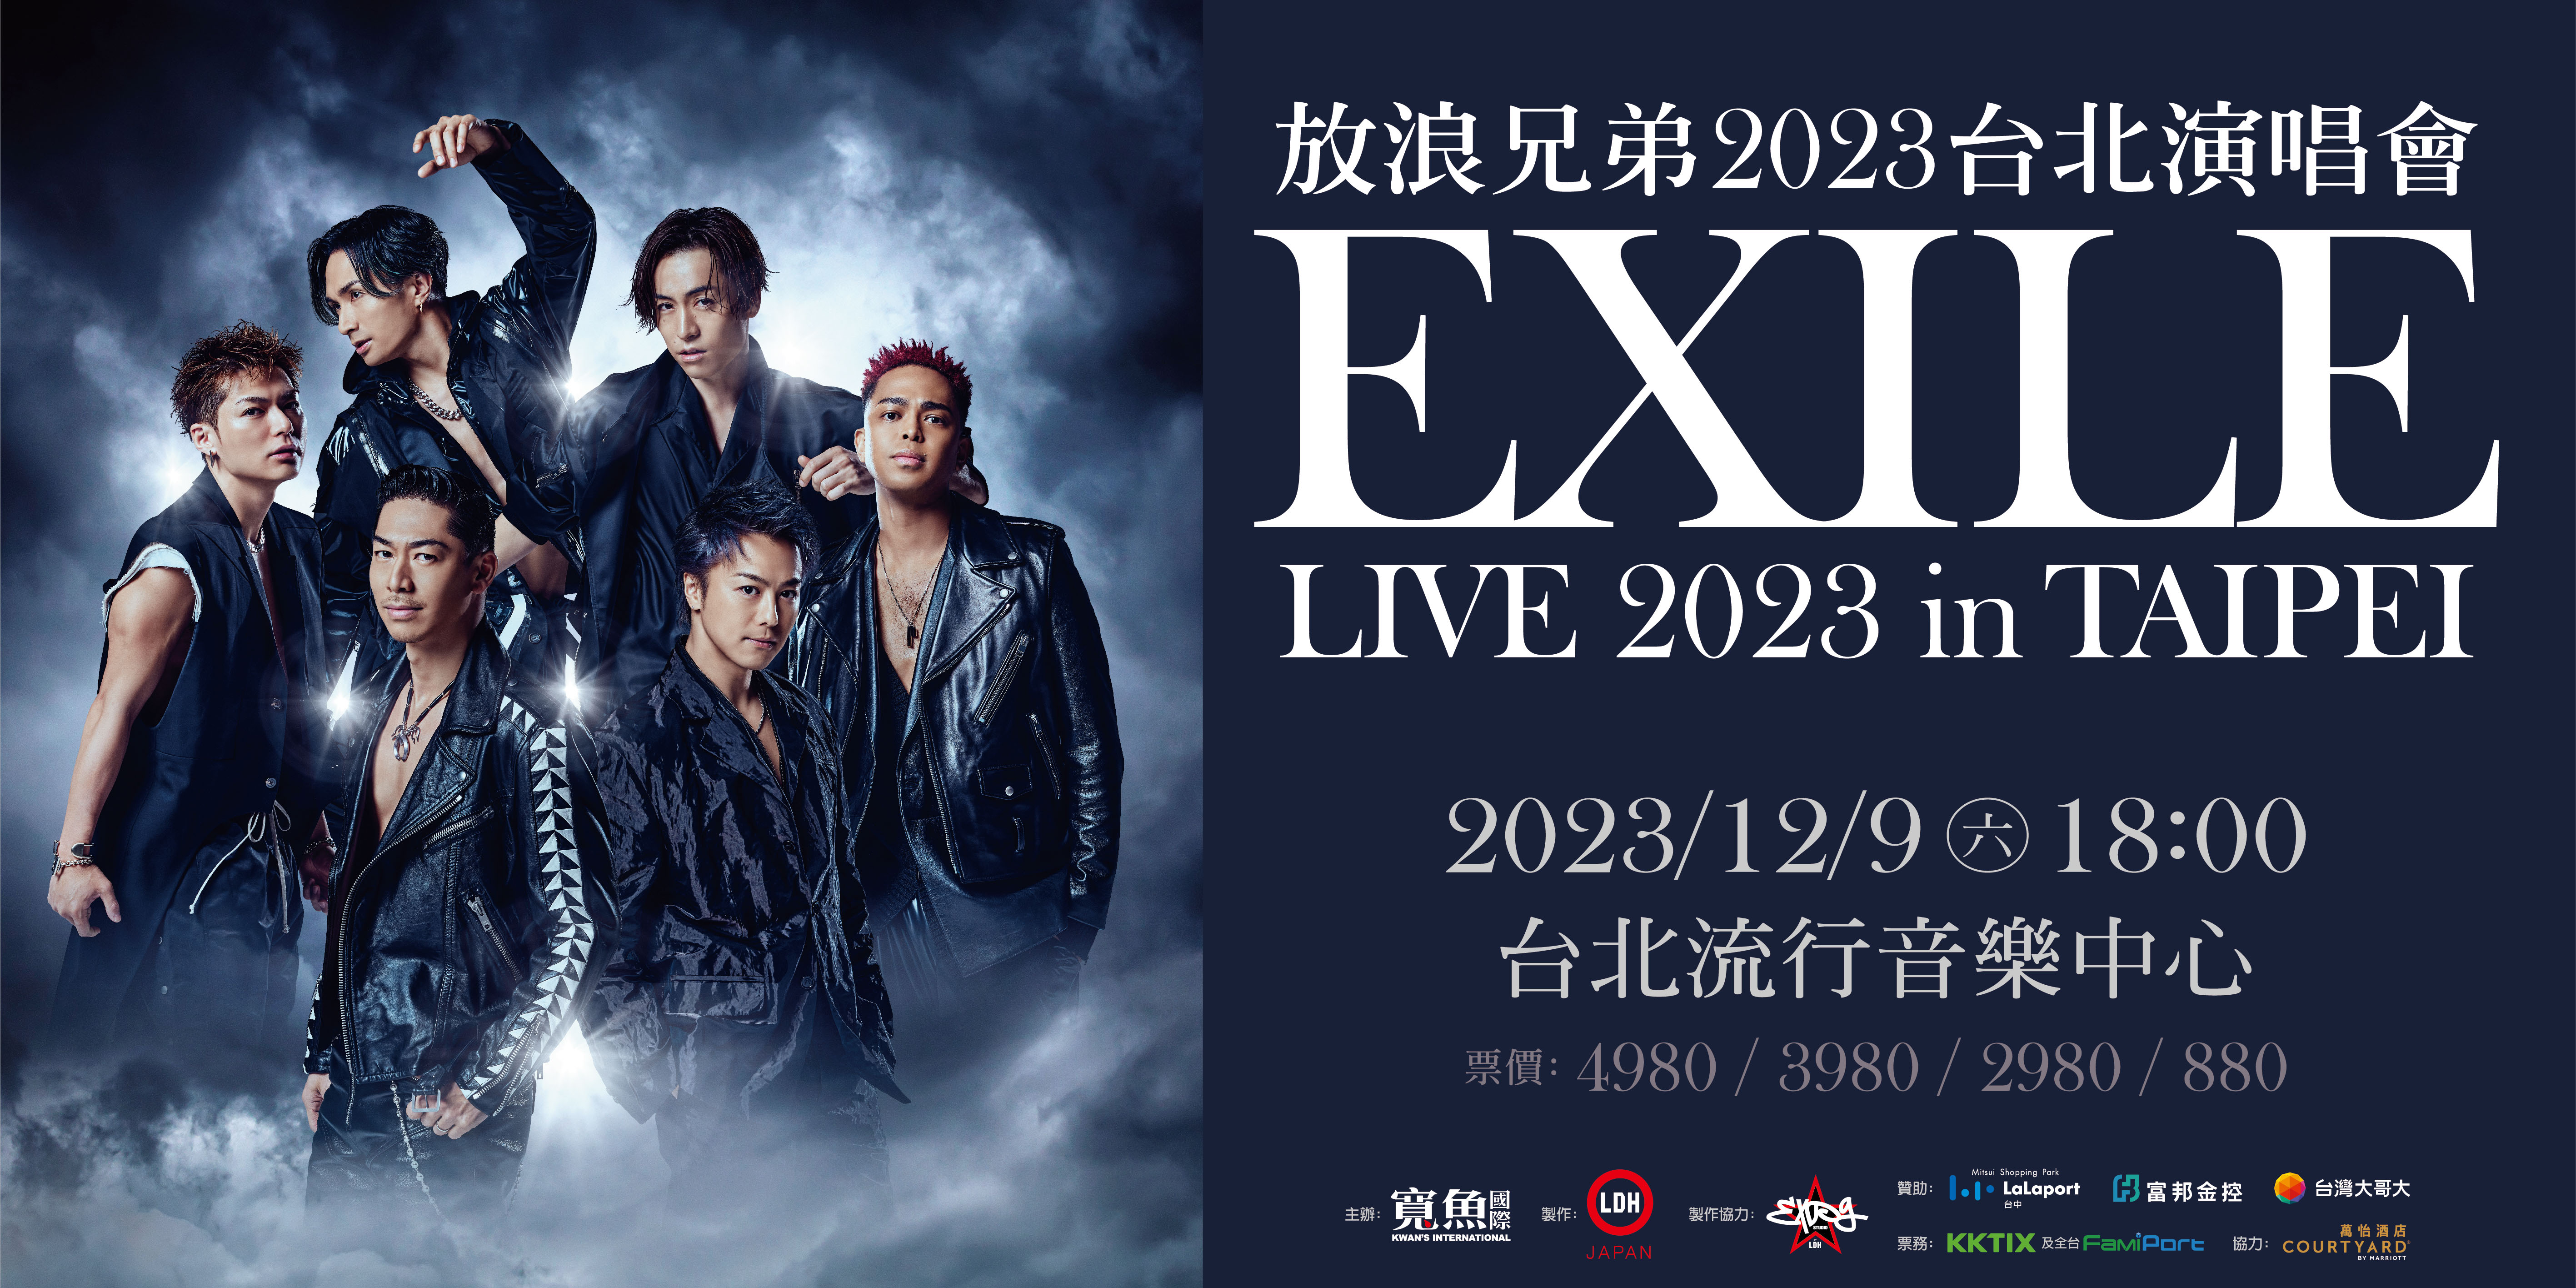 放浪兄弟 2023 台北演唱會 EXILE LIVE 2023 IN TAIPEI